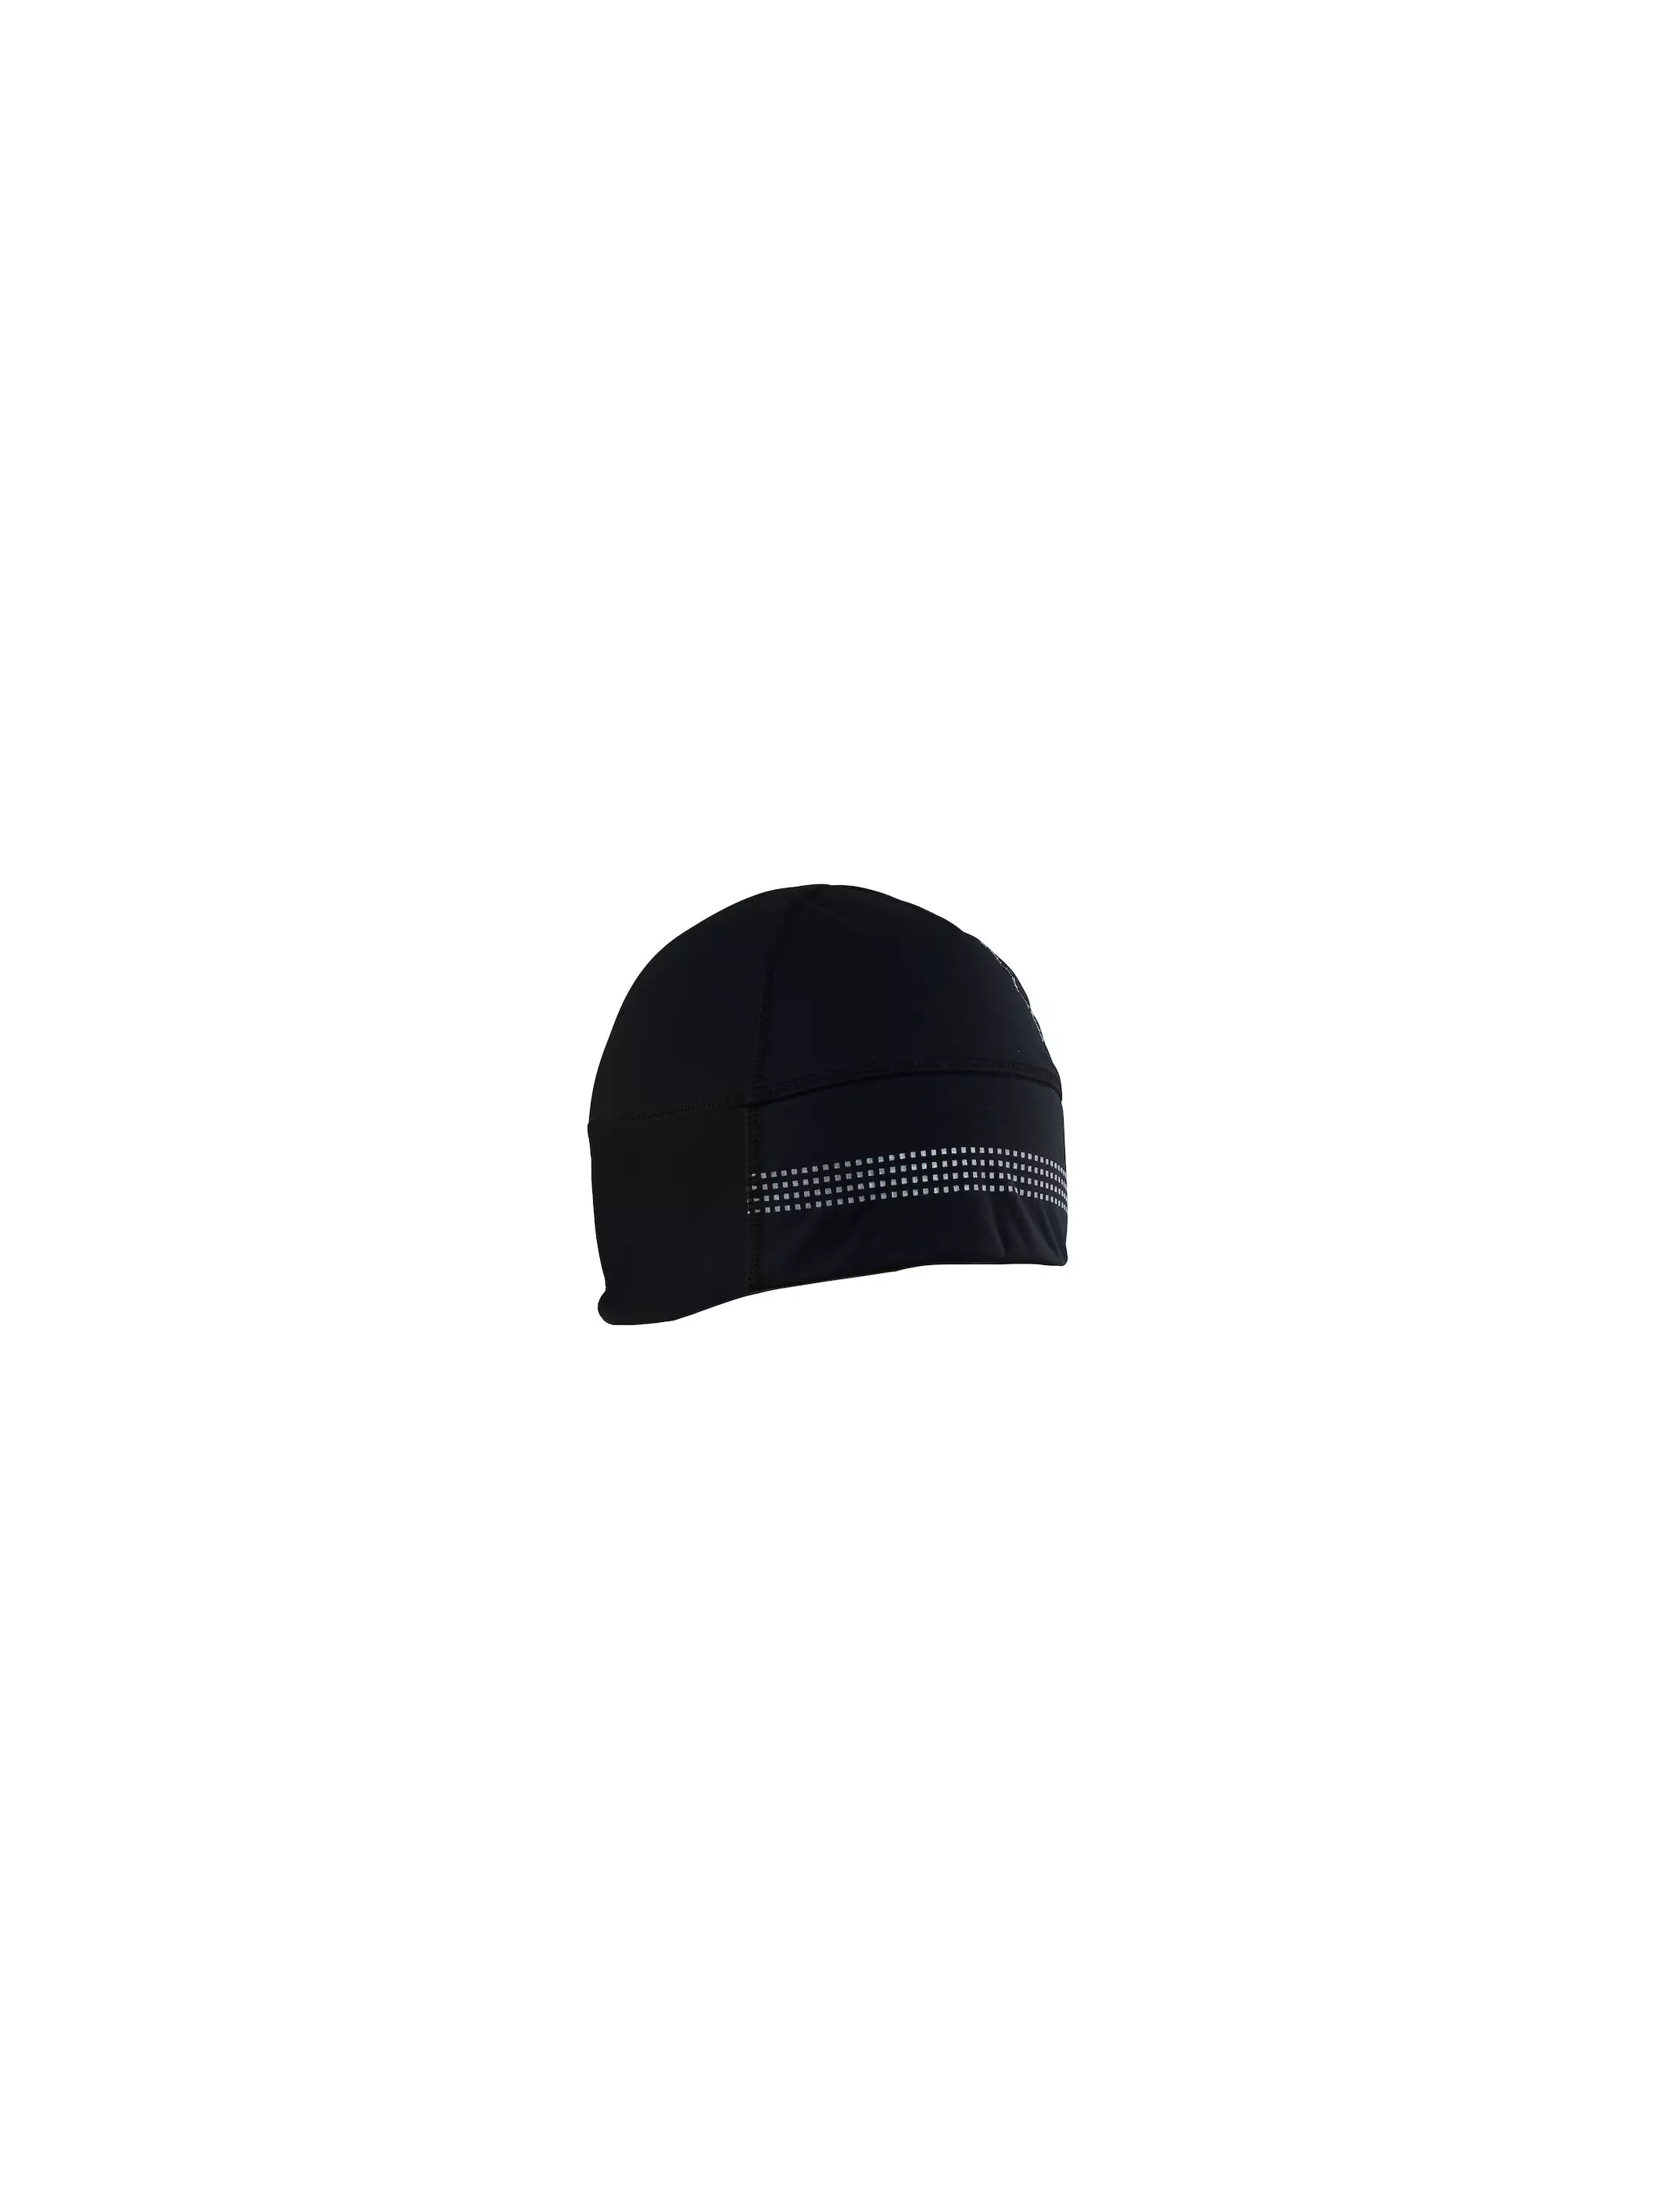 Casquettes / Bonnets Craft CORE SUBZ SHELTER HAT - 1905547